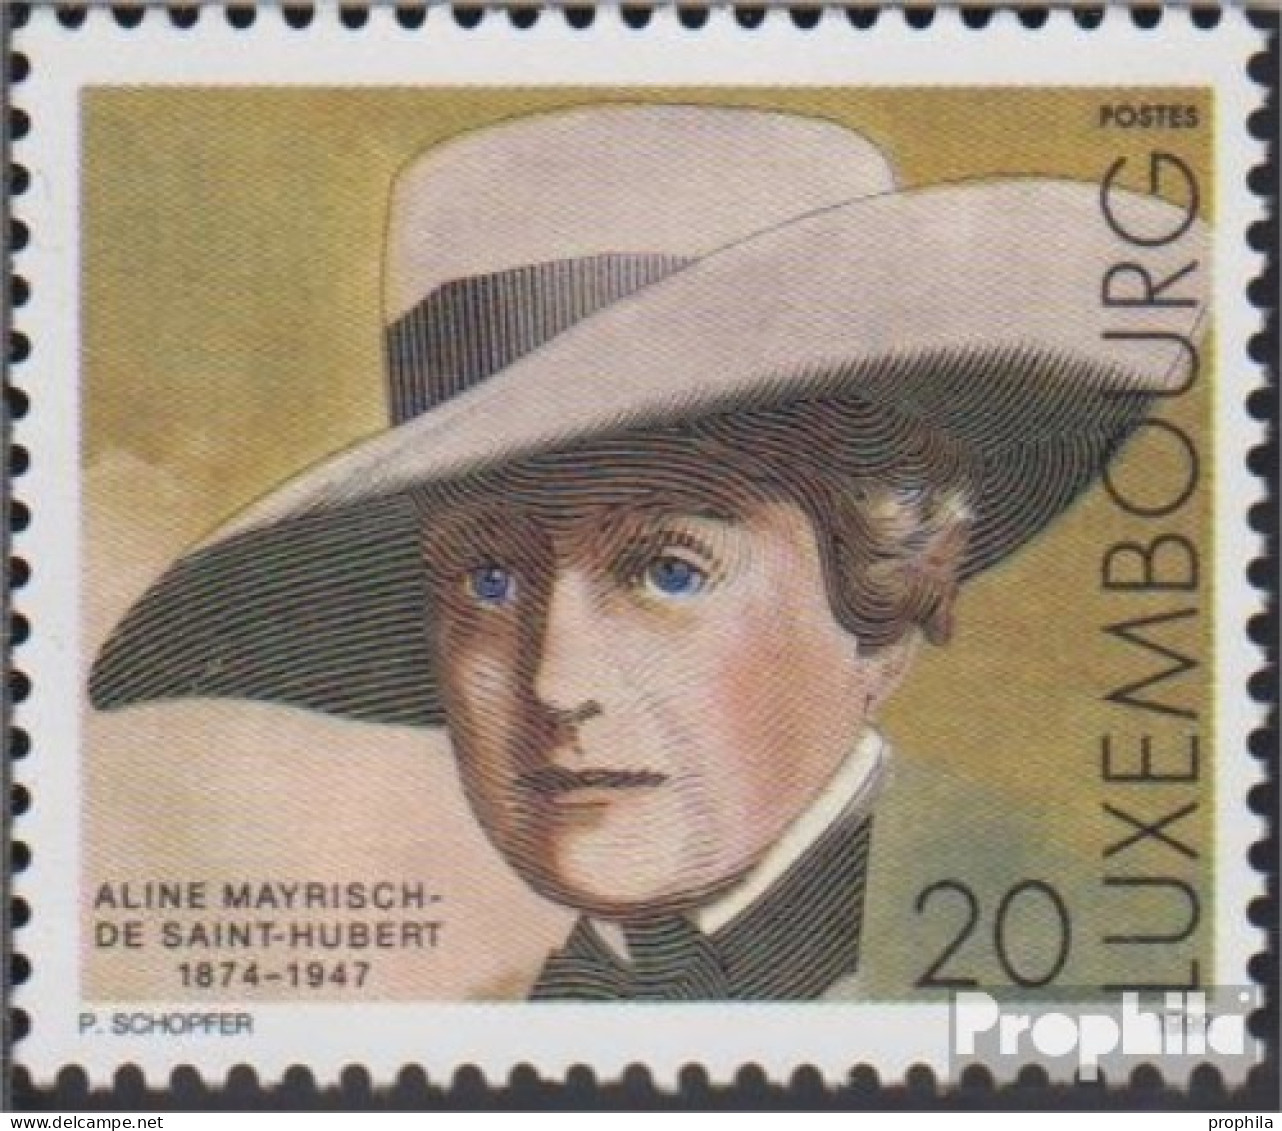 Luxemburg 1480 (kompl.Ausg.) Postfrisch 1999 Aline Mayrisch-de Saint-Hubert - Nuovi